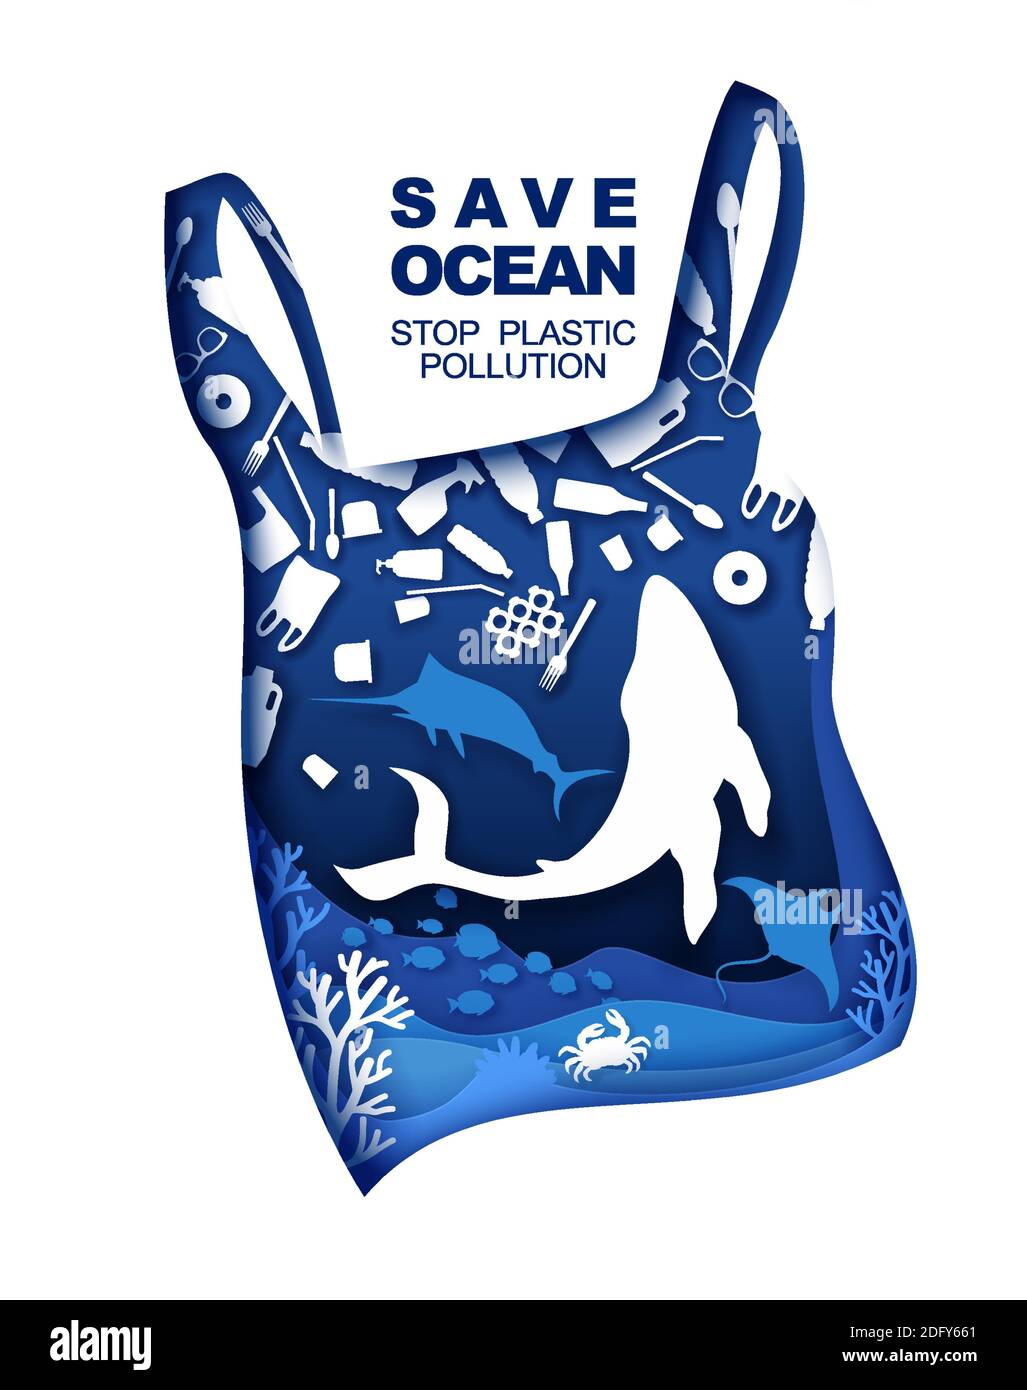 Sparen Sie den Ozean. Verhindern Sie die Verschmutzung durch Plastik. Vektorgrafik im Papierkunststil. Ozean Umweltproblem, Ökologie. Stock Vektor